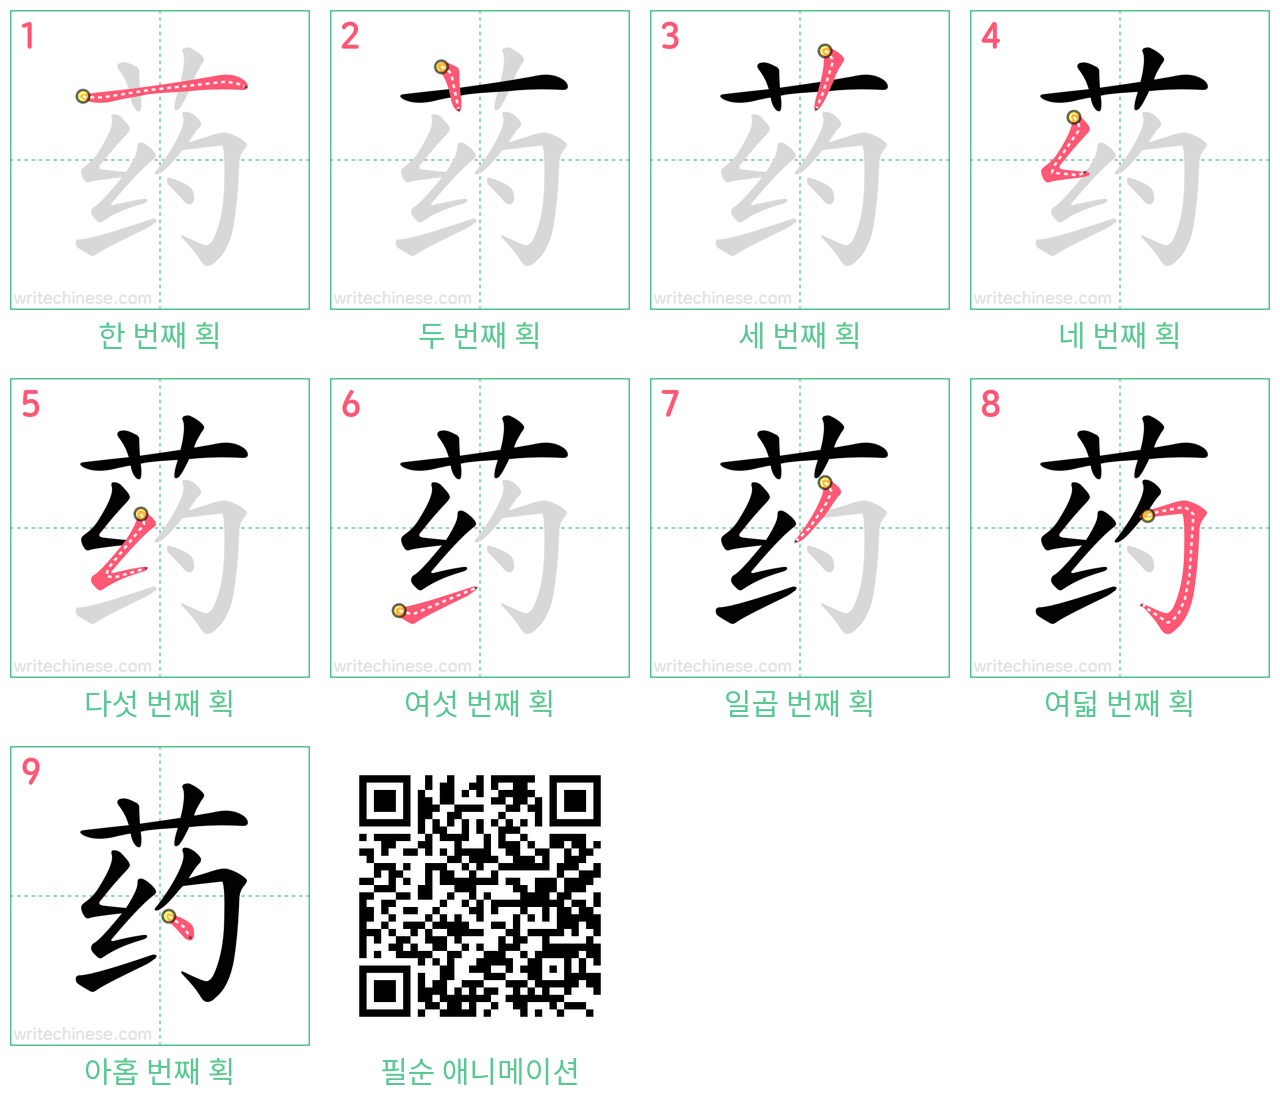 药 step-by-step stroke order diagrams